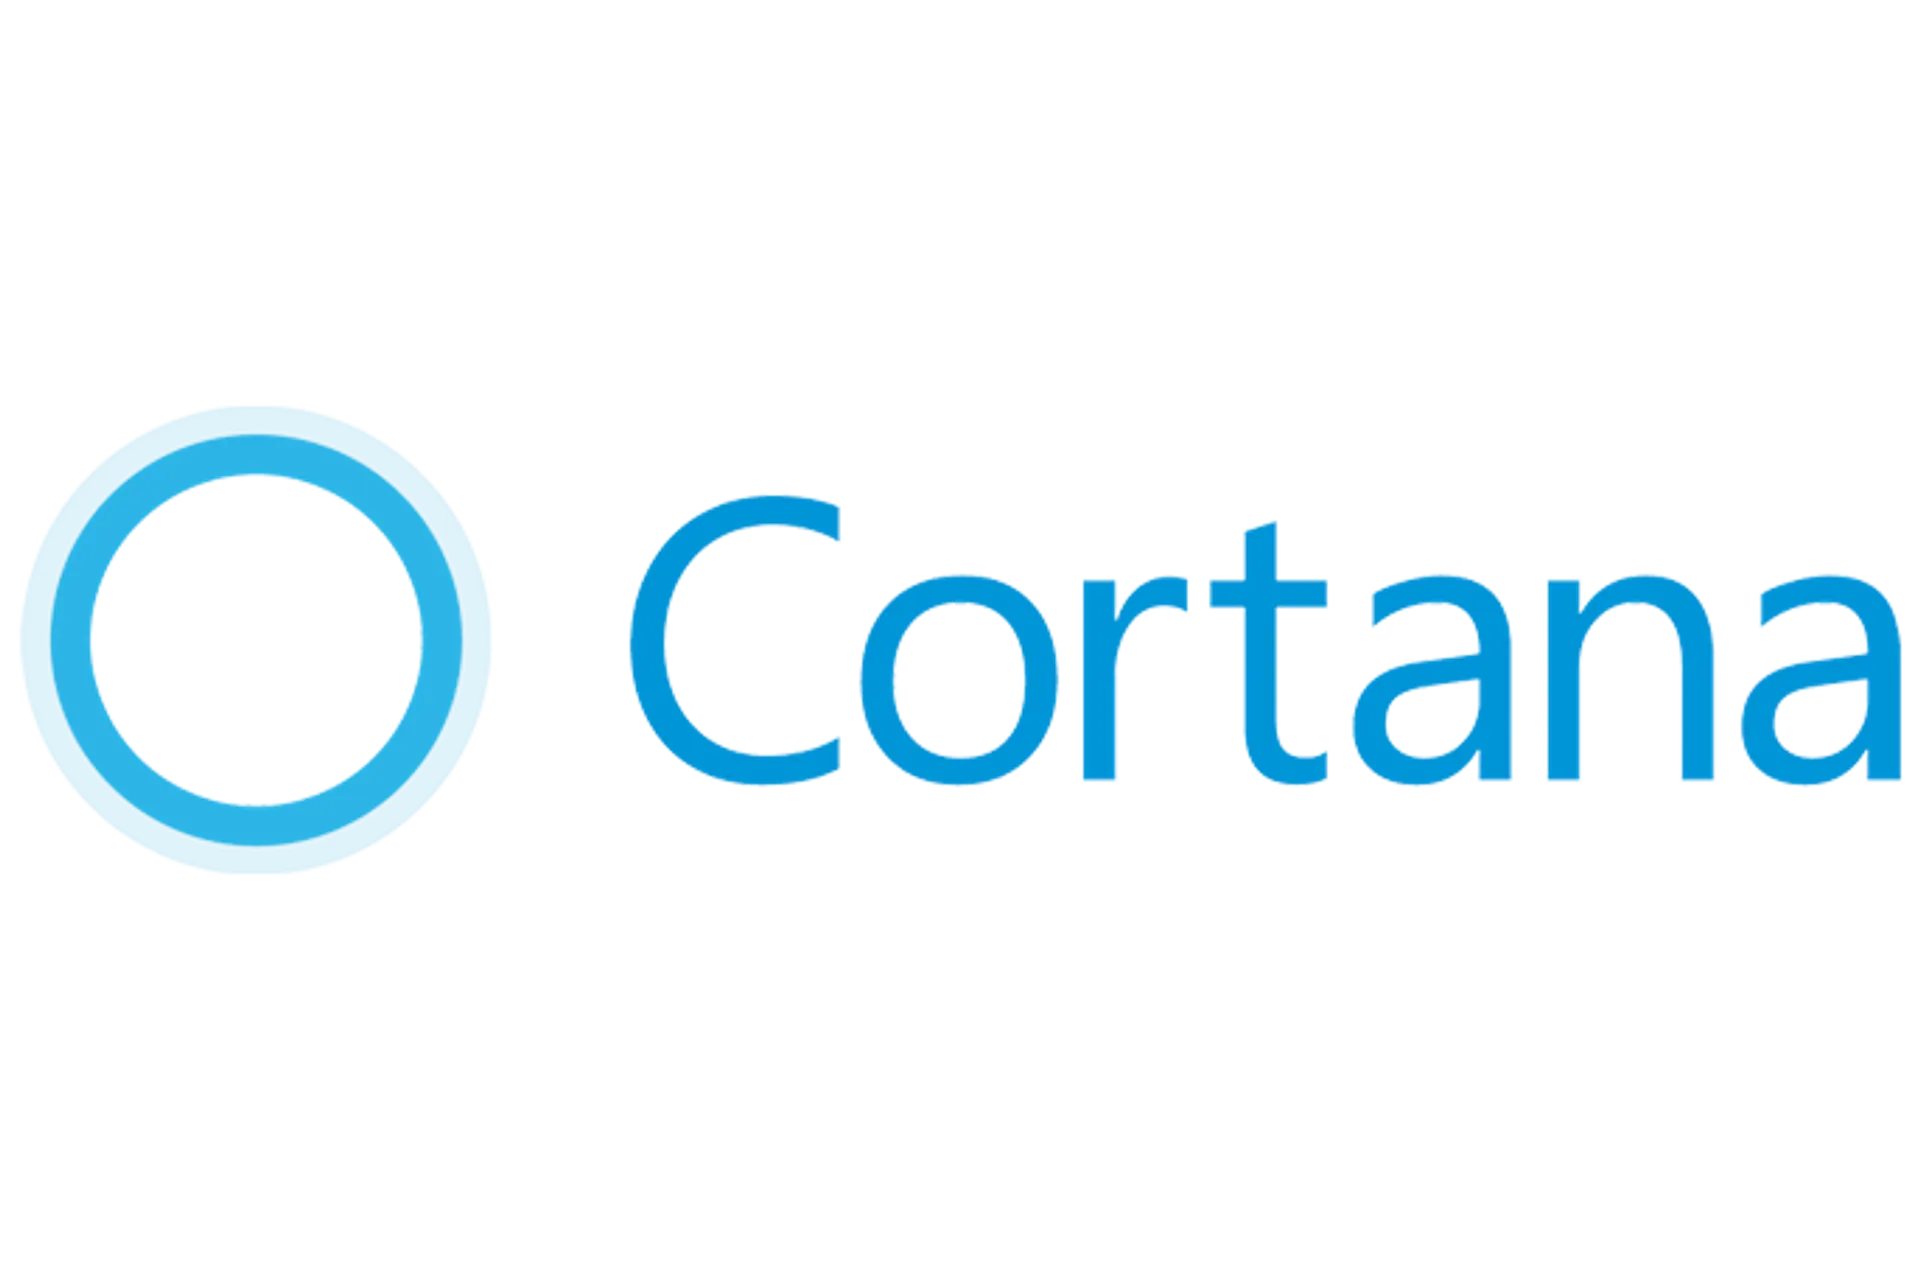 CORTANA logo